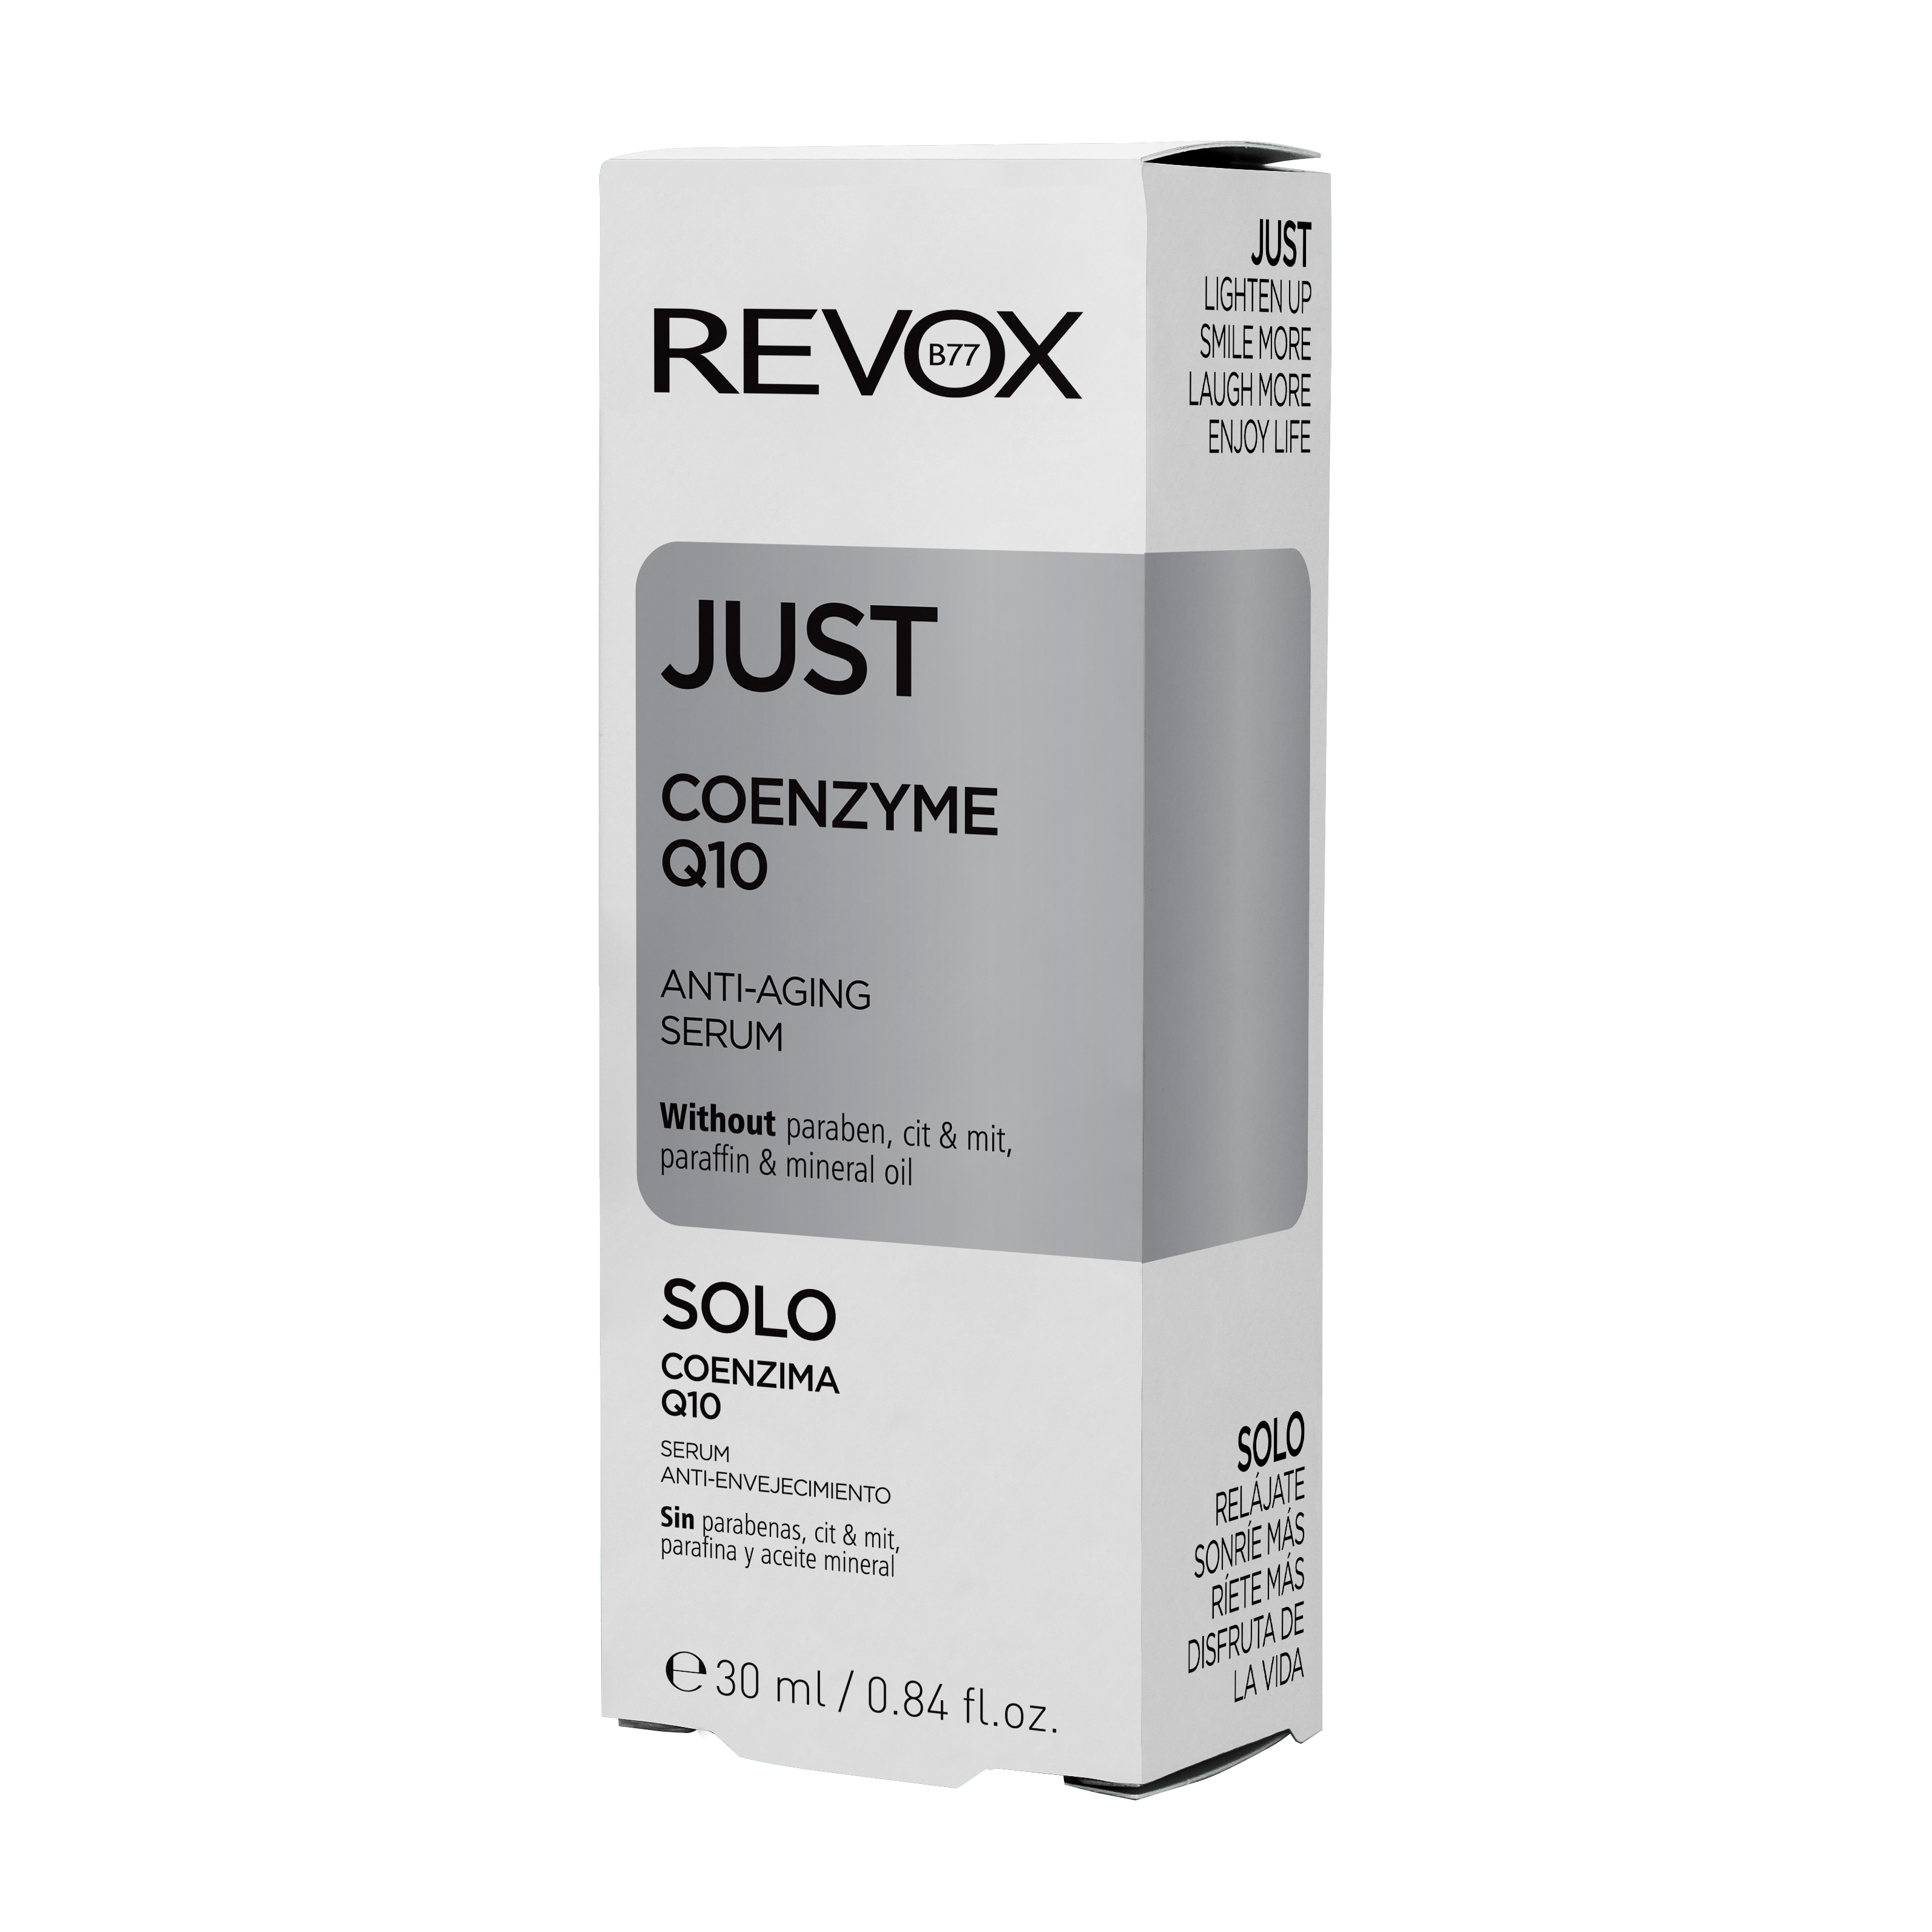 Coenzima Q10 Just Q10 1%, 30 ml, Revox 